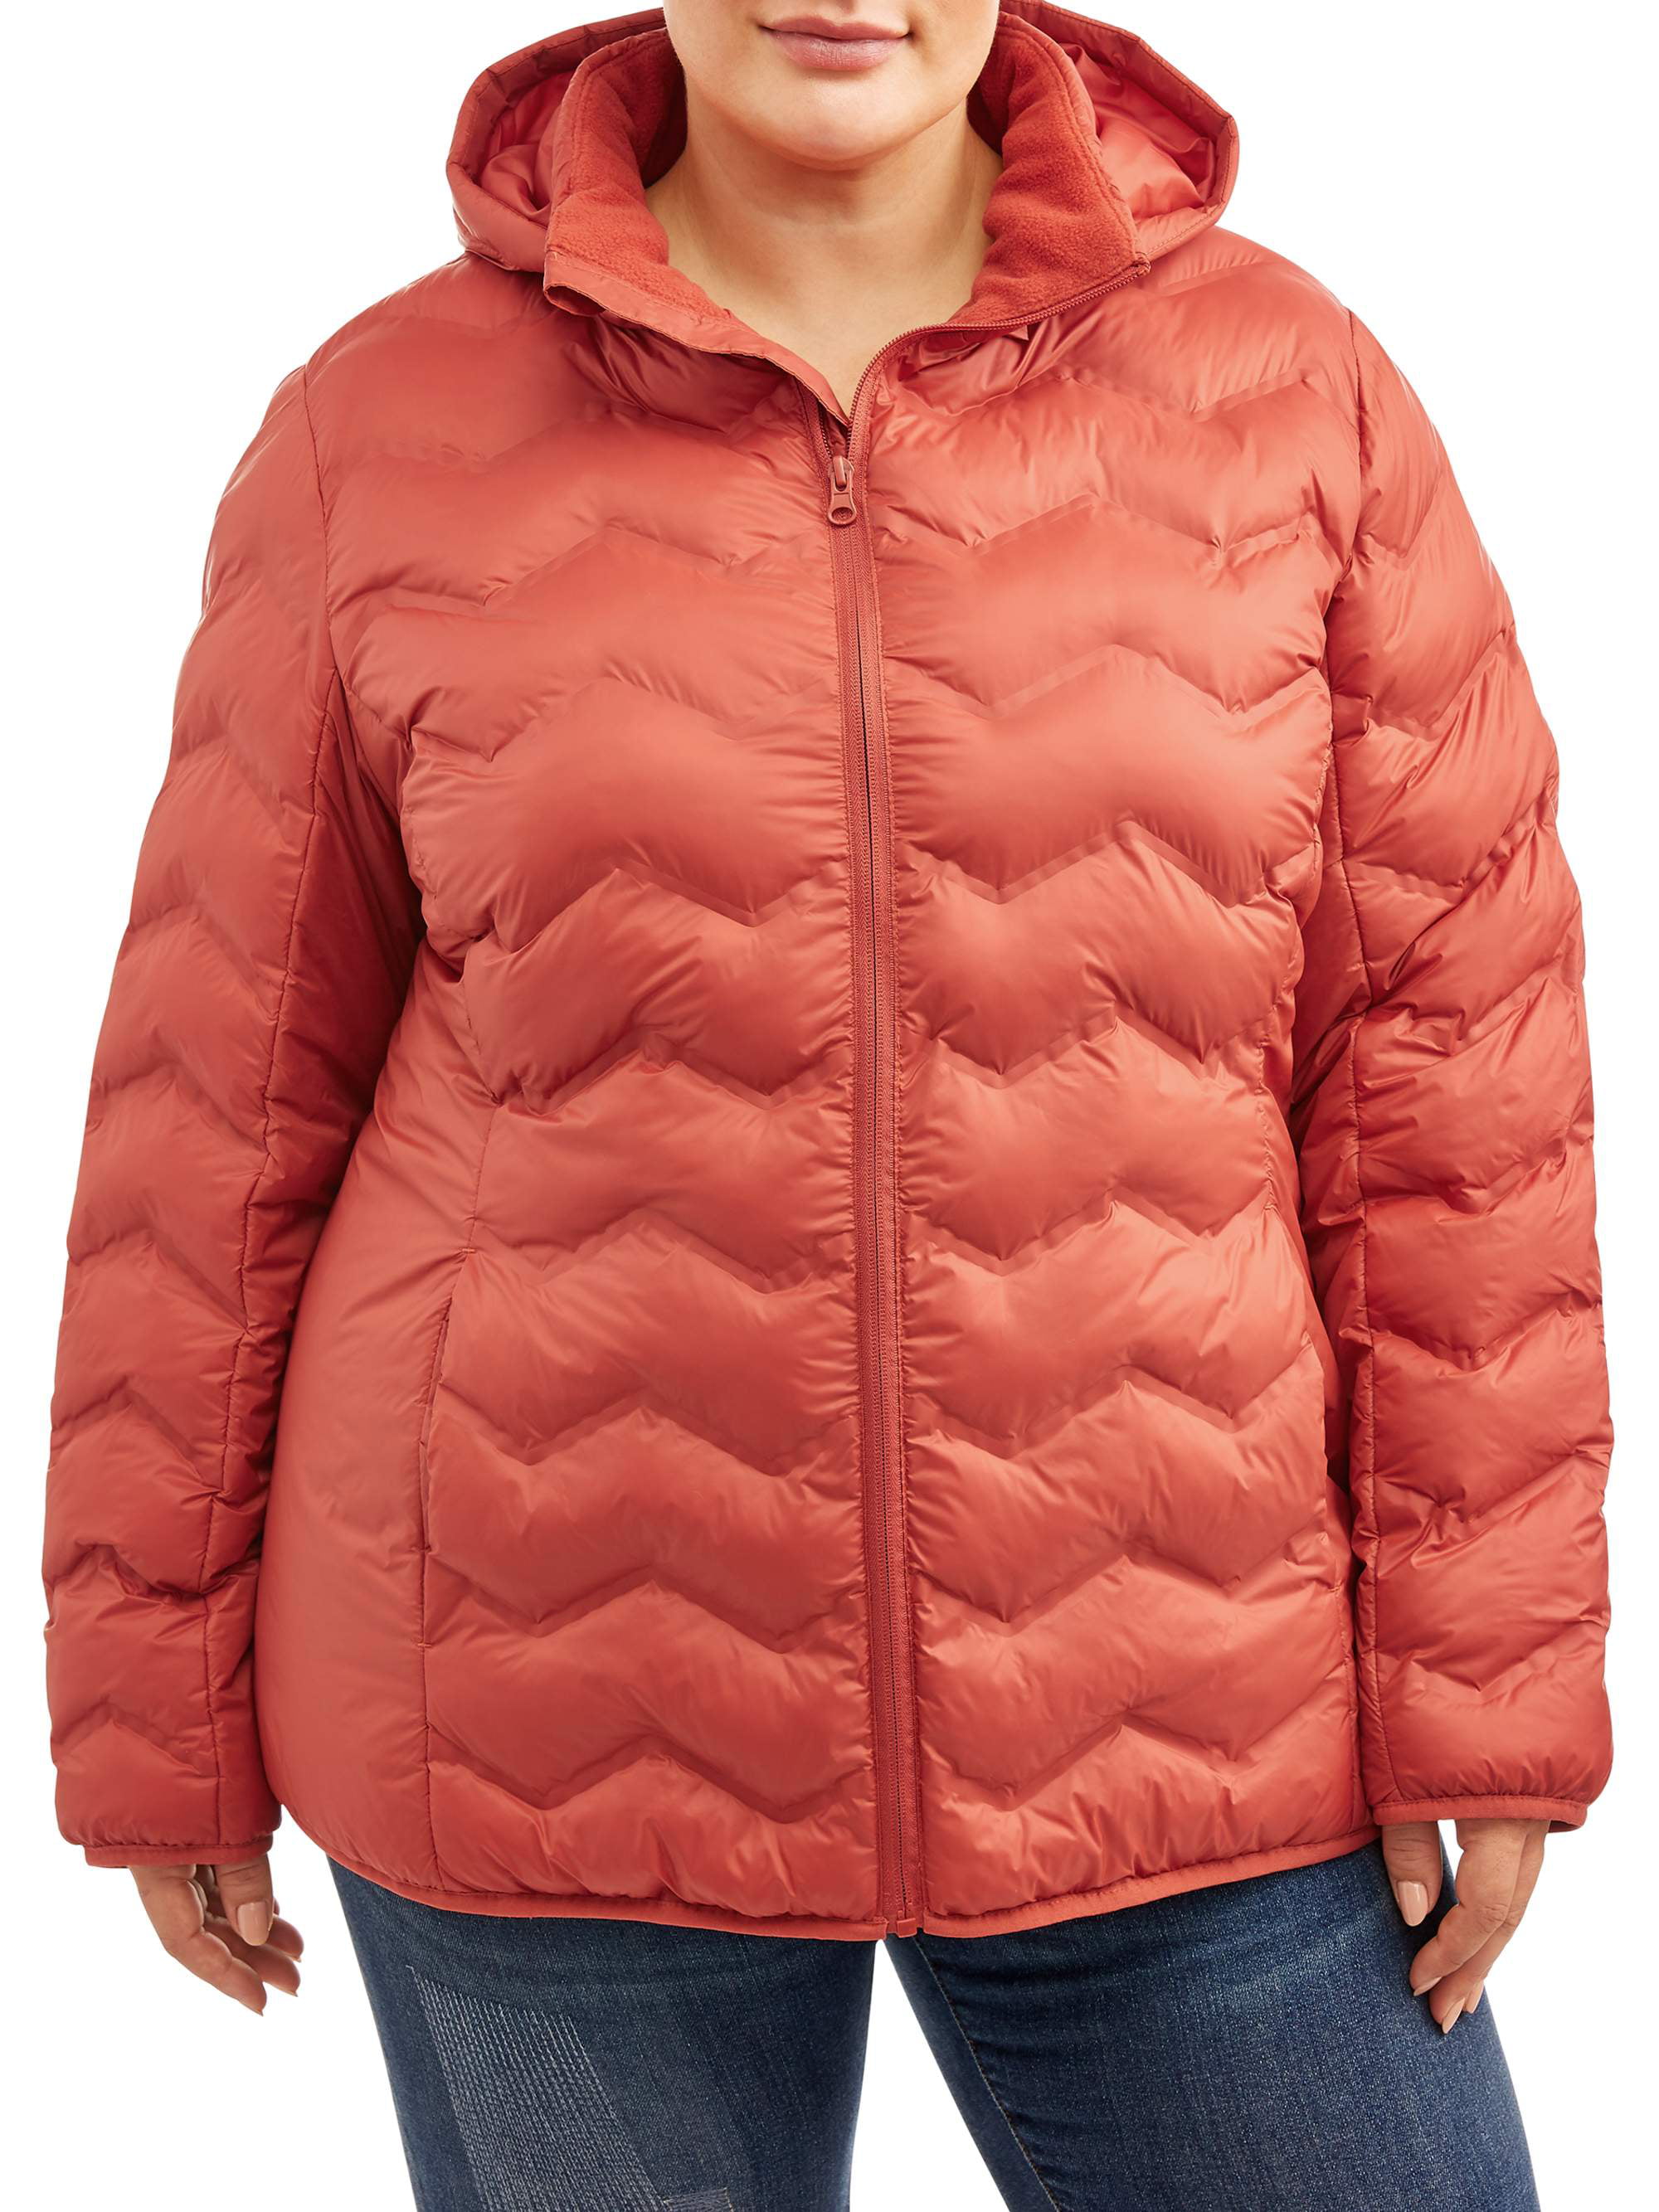 puffer jacket women's plus size